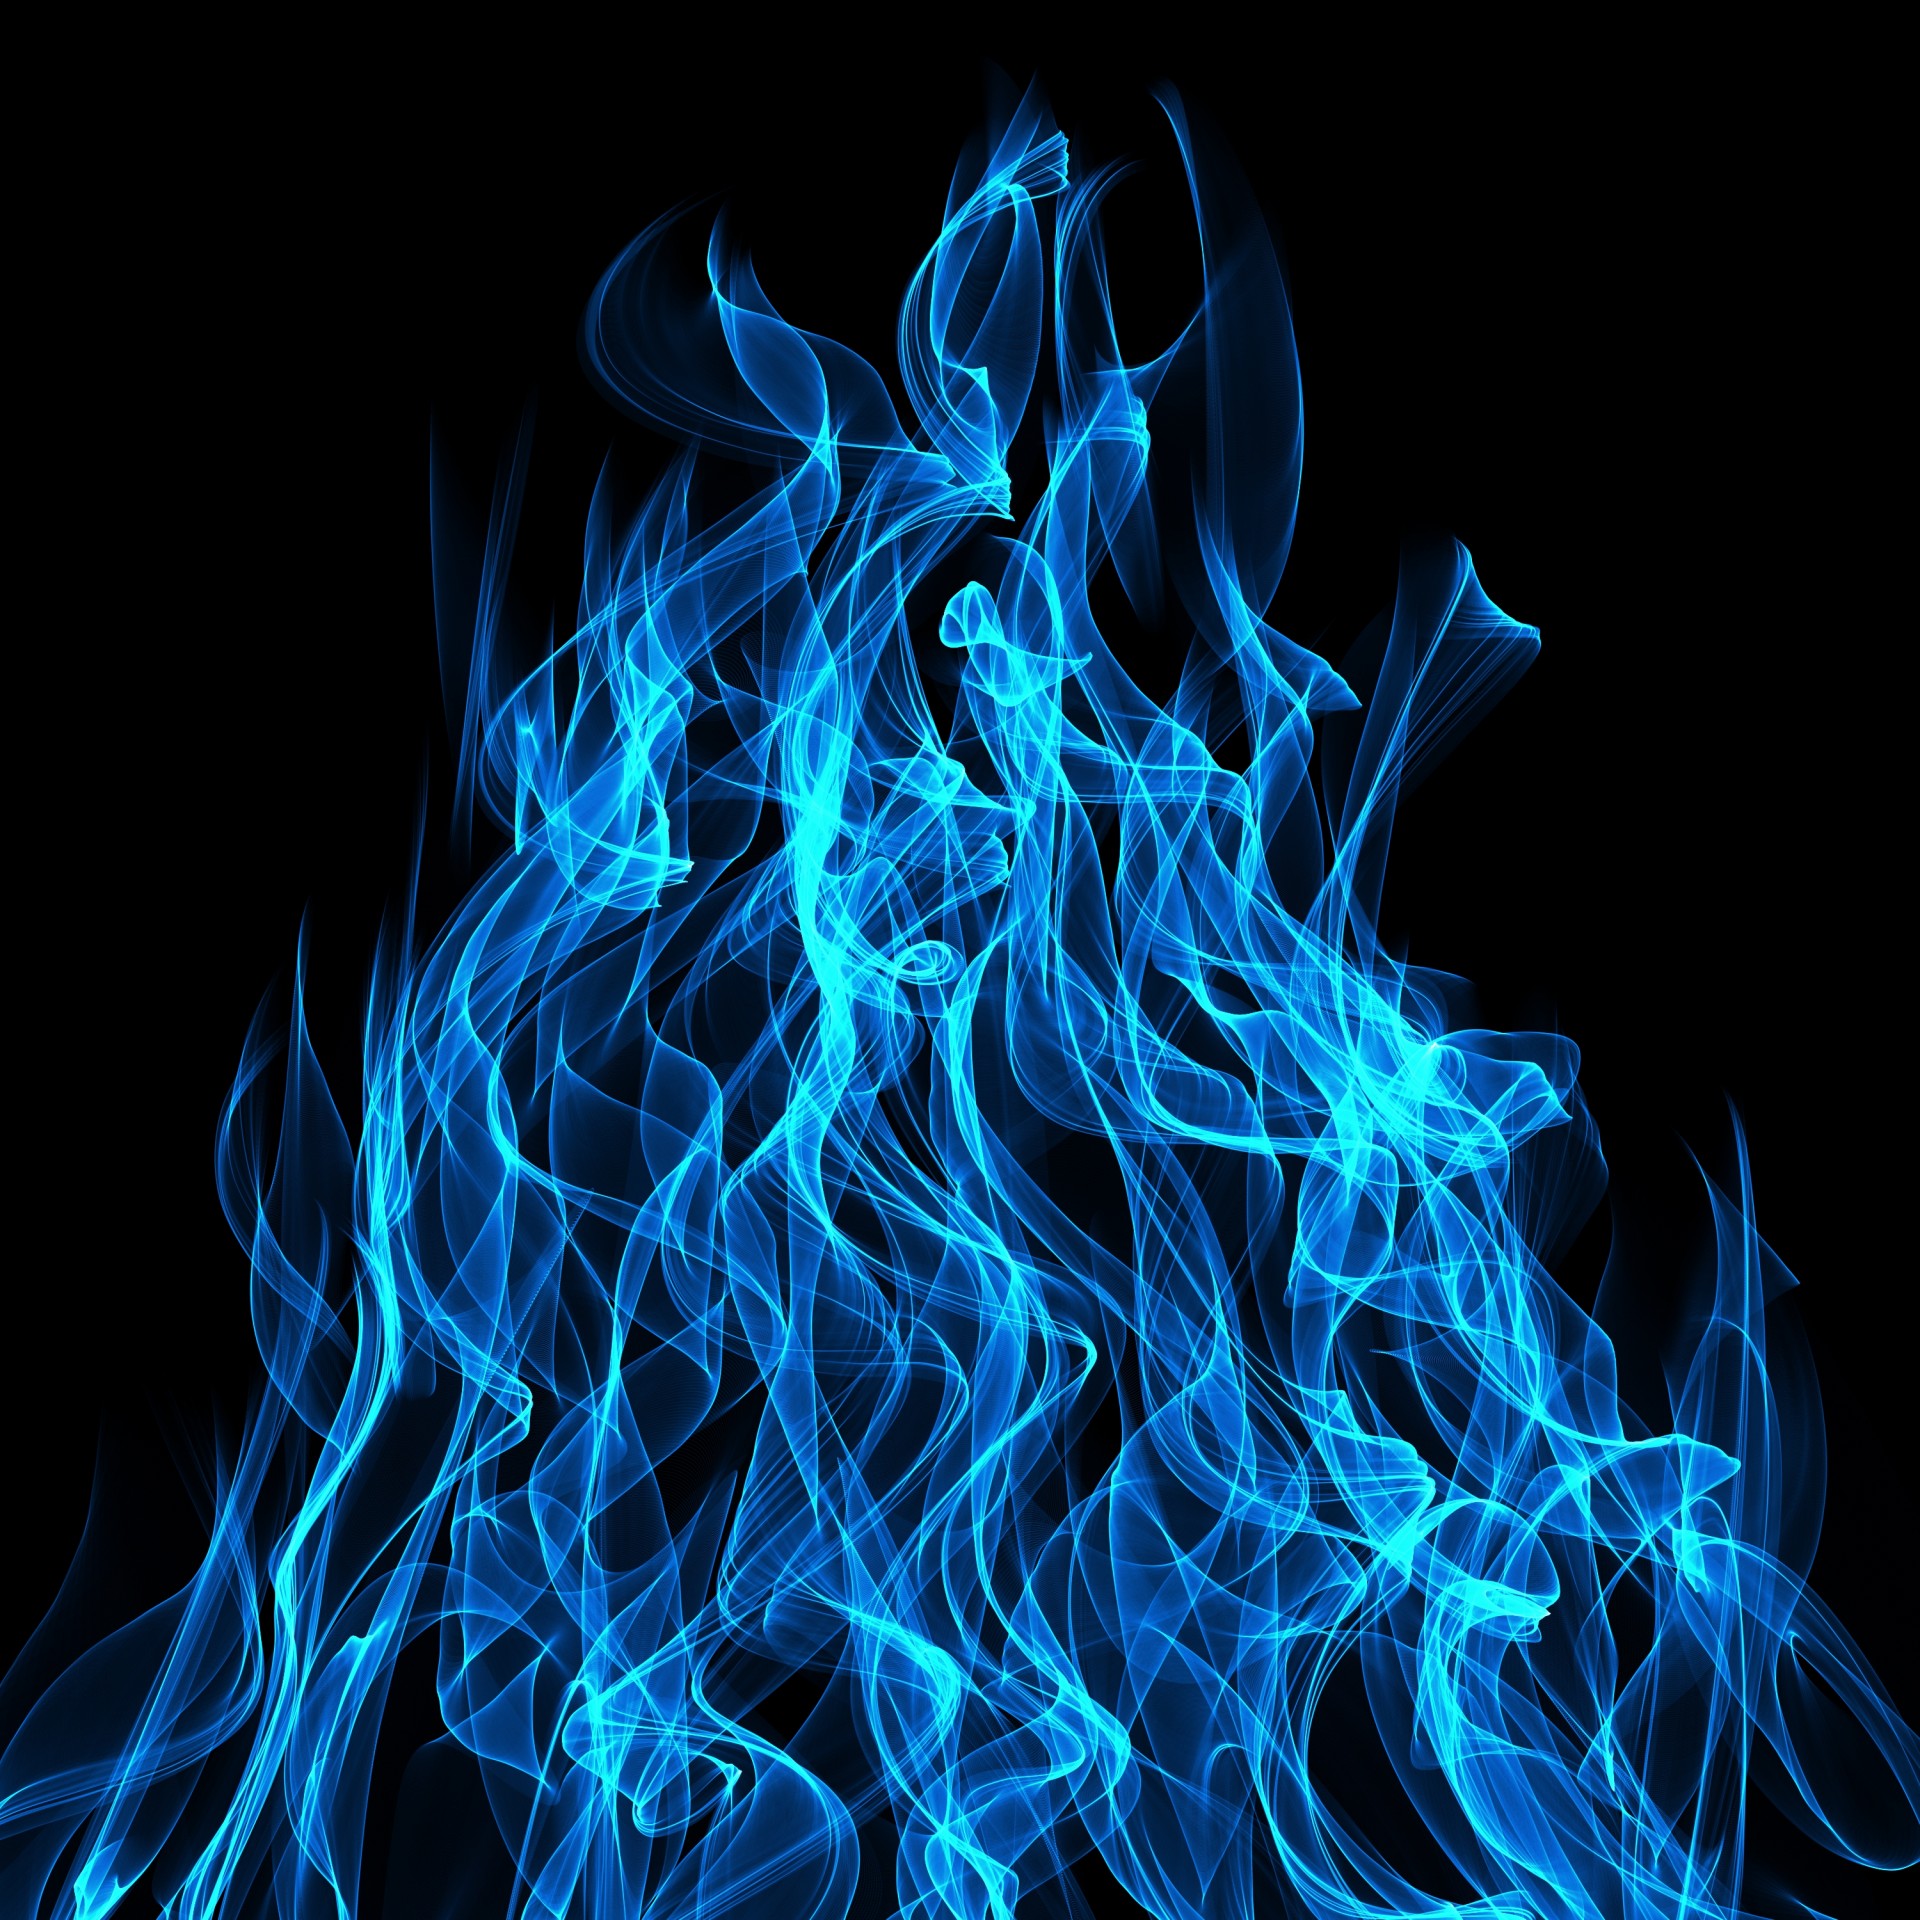 Modré plameny ohně